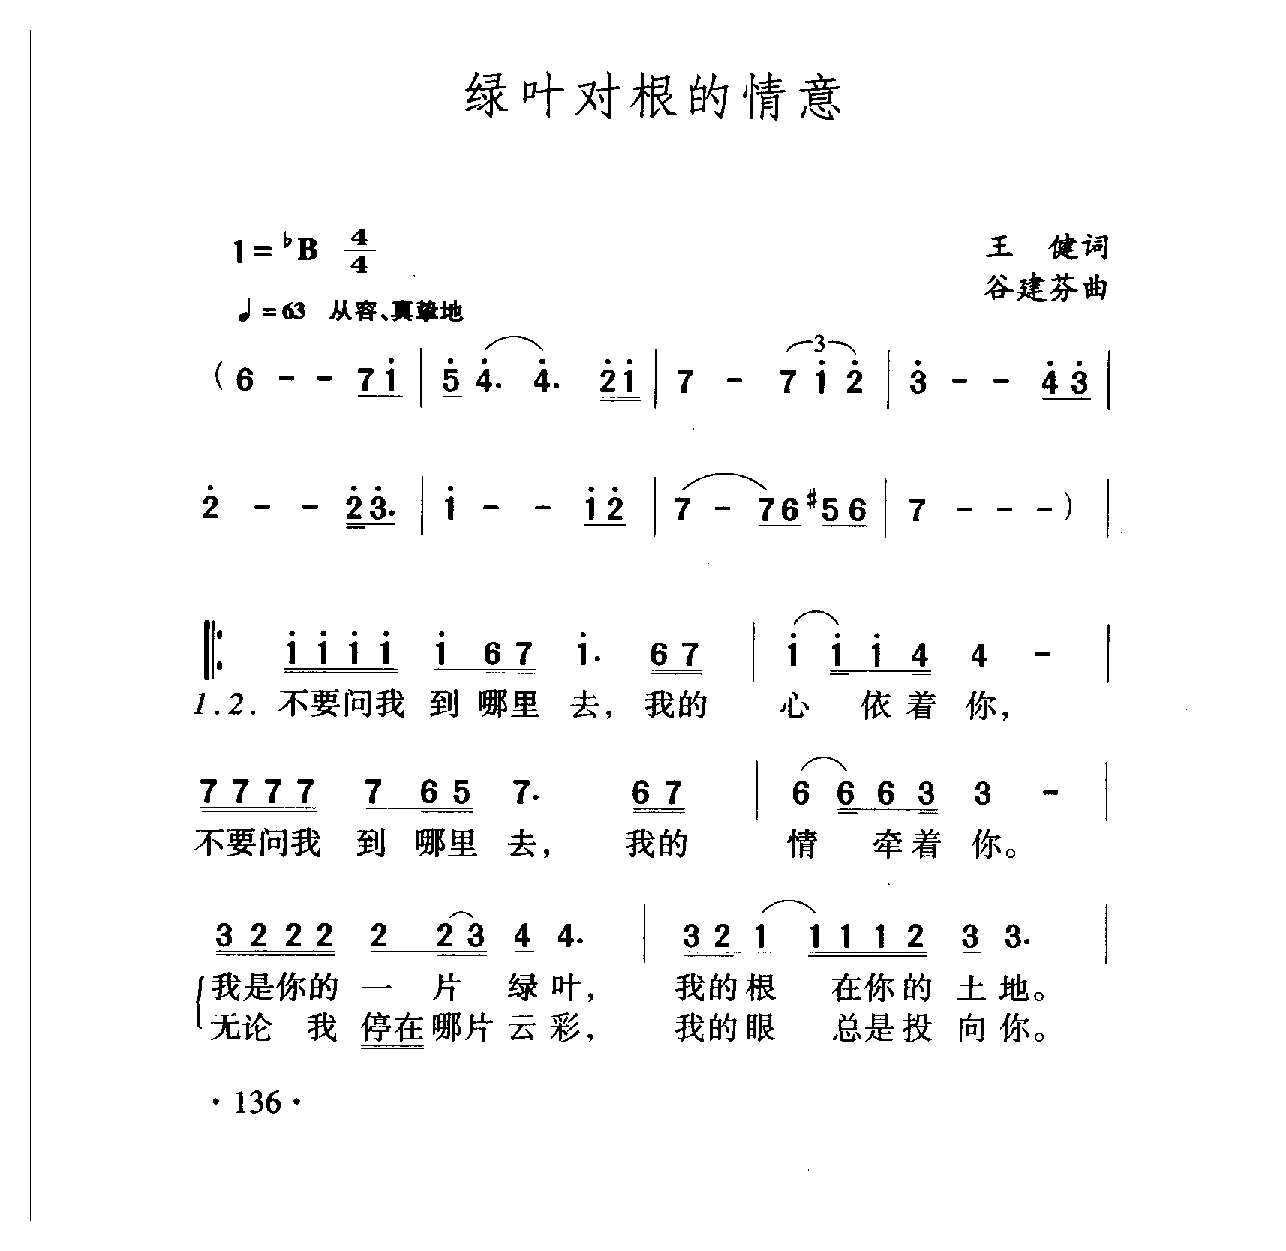 中国名歌[绿叶对根的情意]乐谱